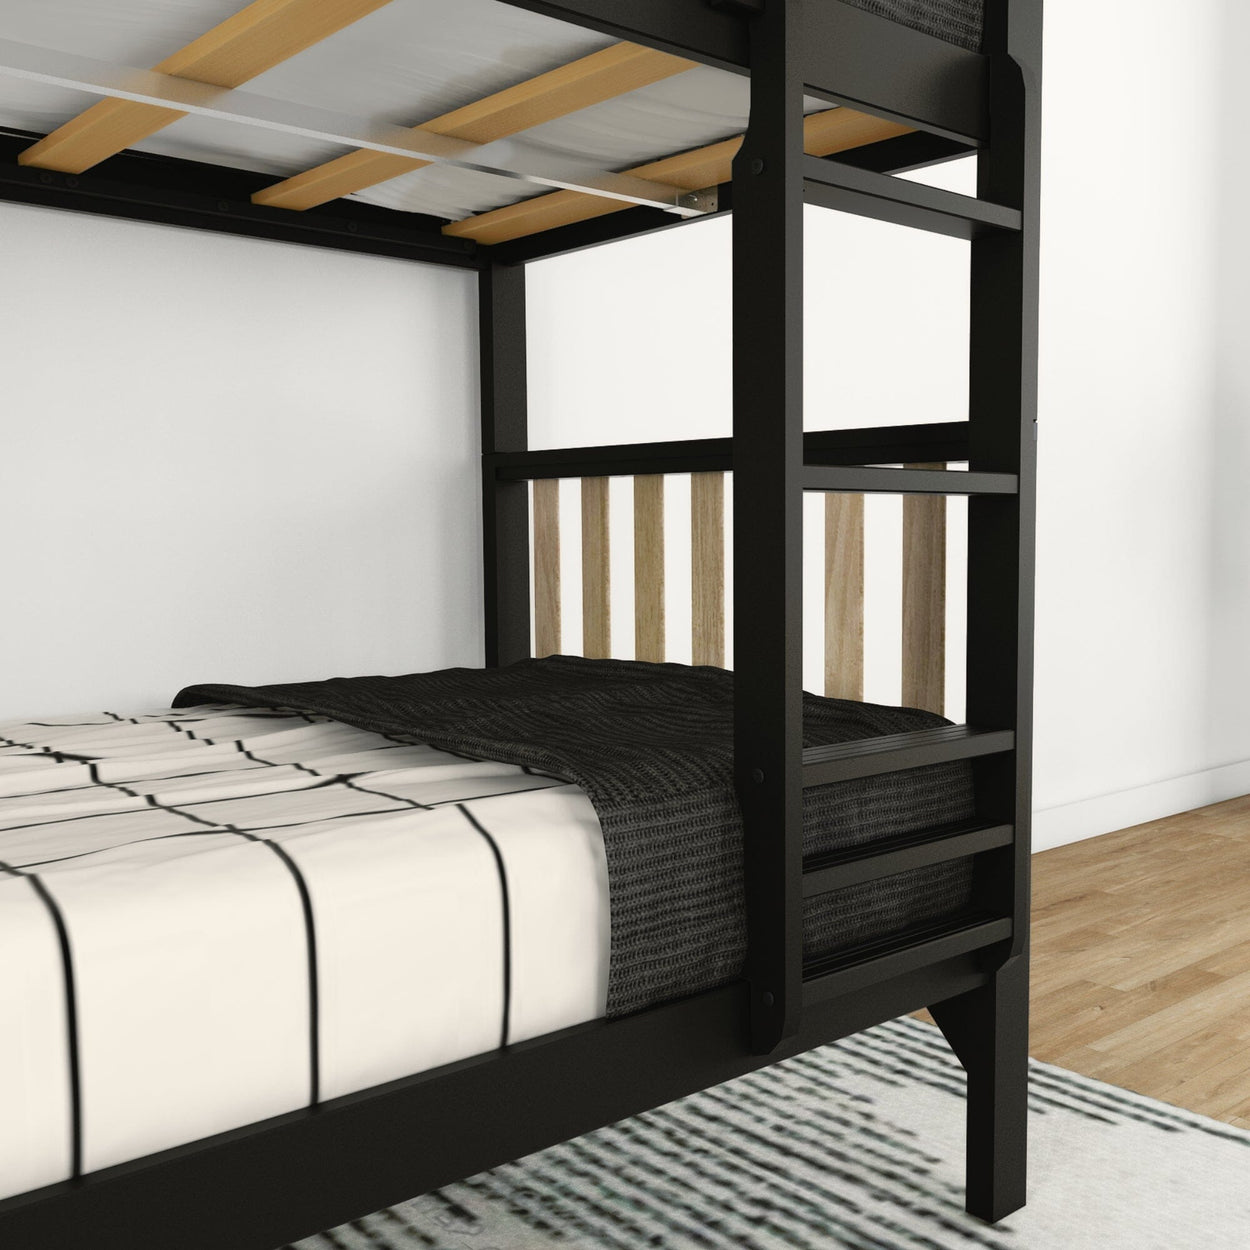 210201-272 : Bunk Beds Scandinavian Twin over Twin Bunk Bed, Black/Blonde